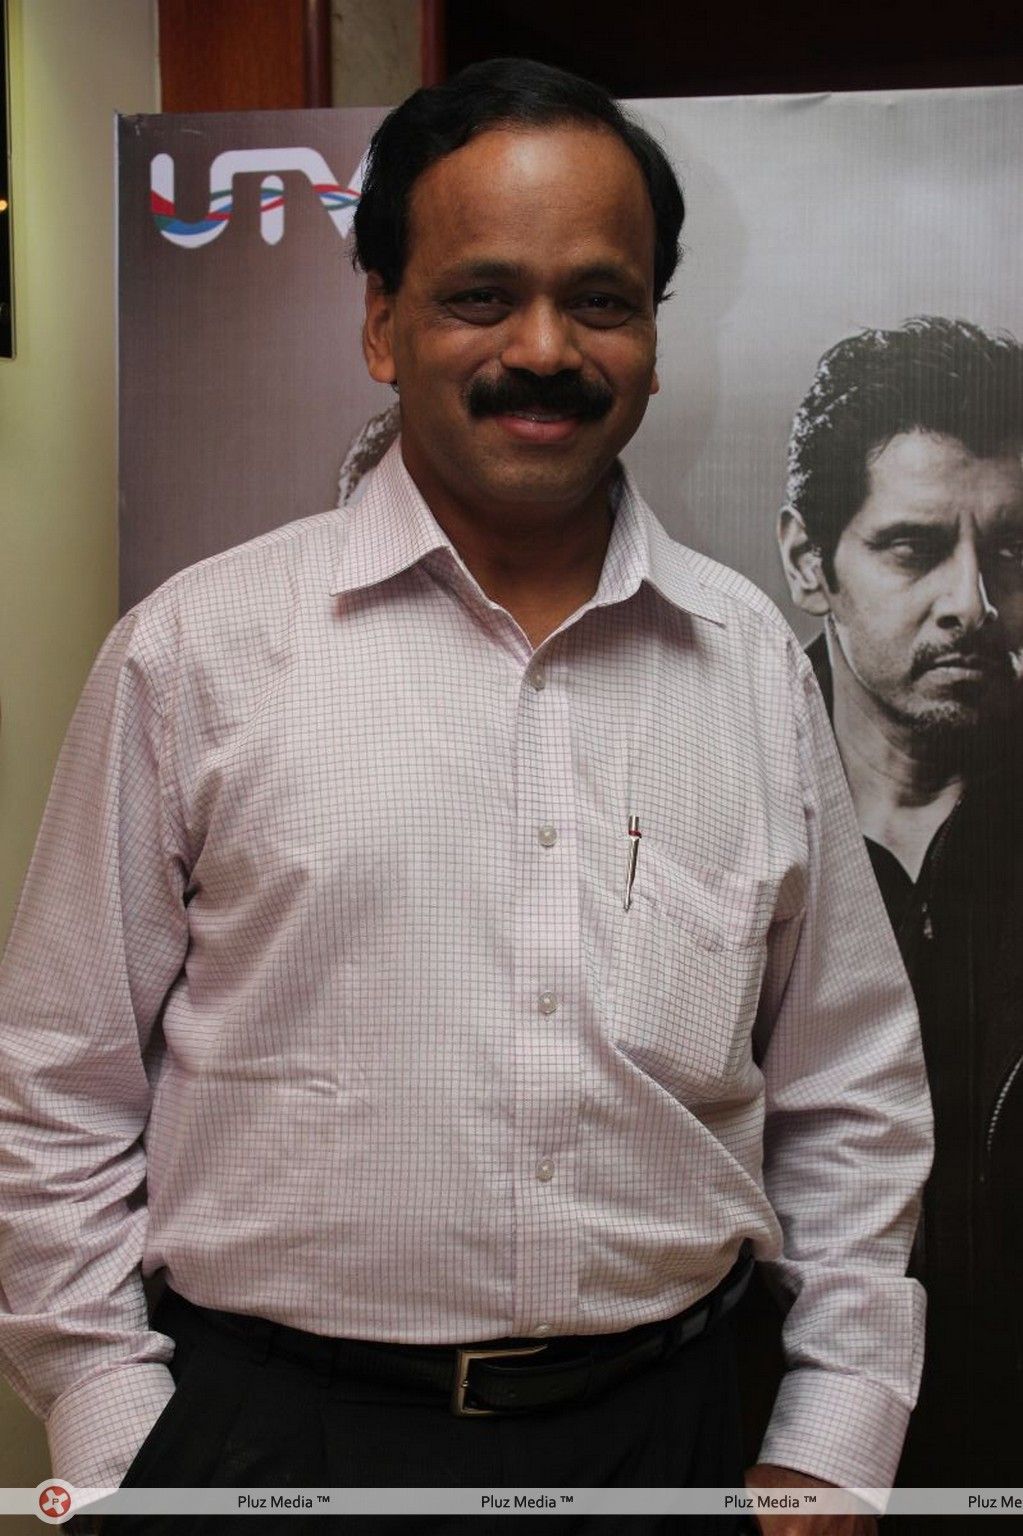 G. Dhananjayan - Thandavam Movie Press Meet Stills | Picture 273544